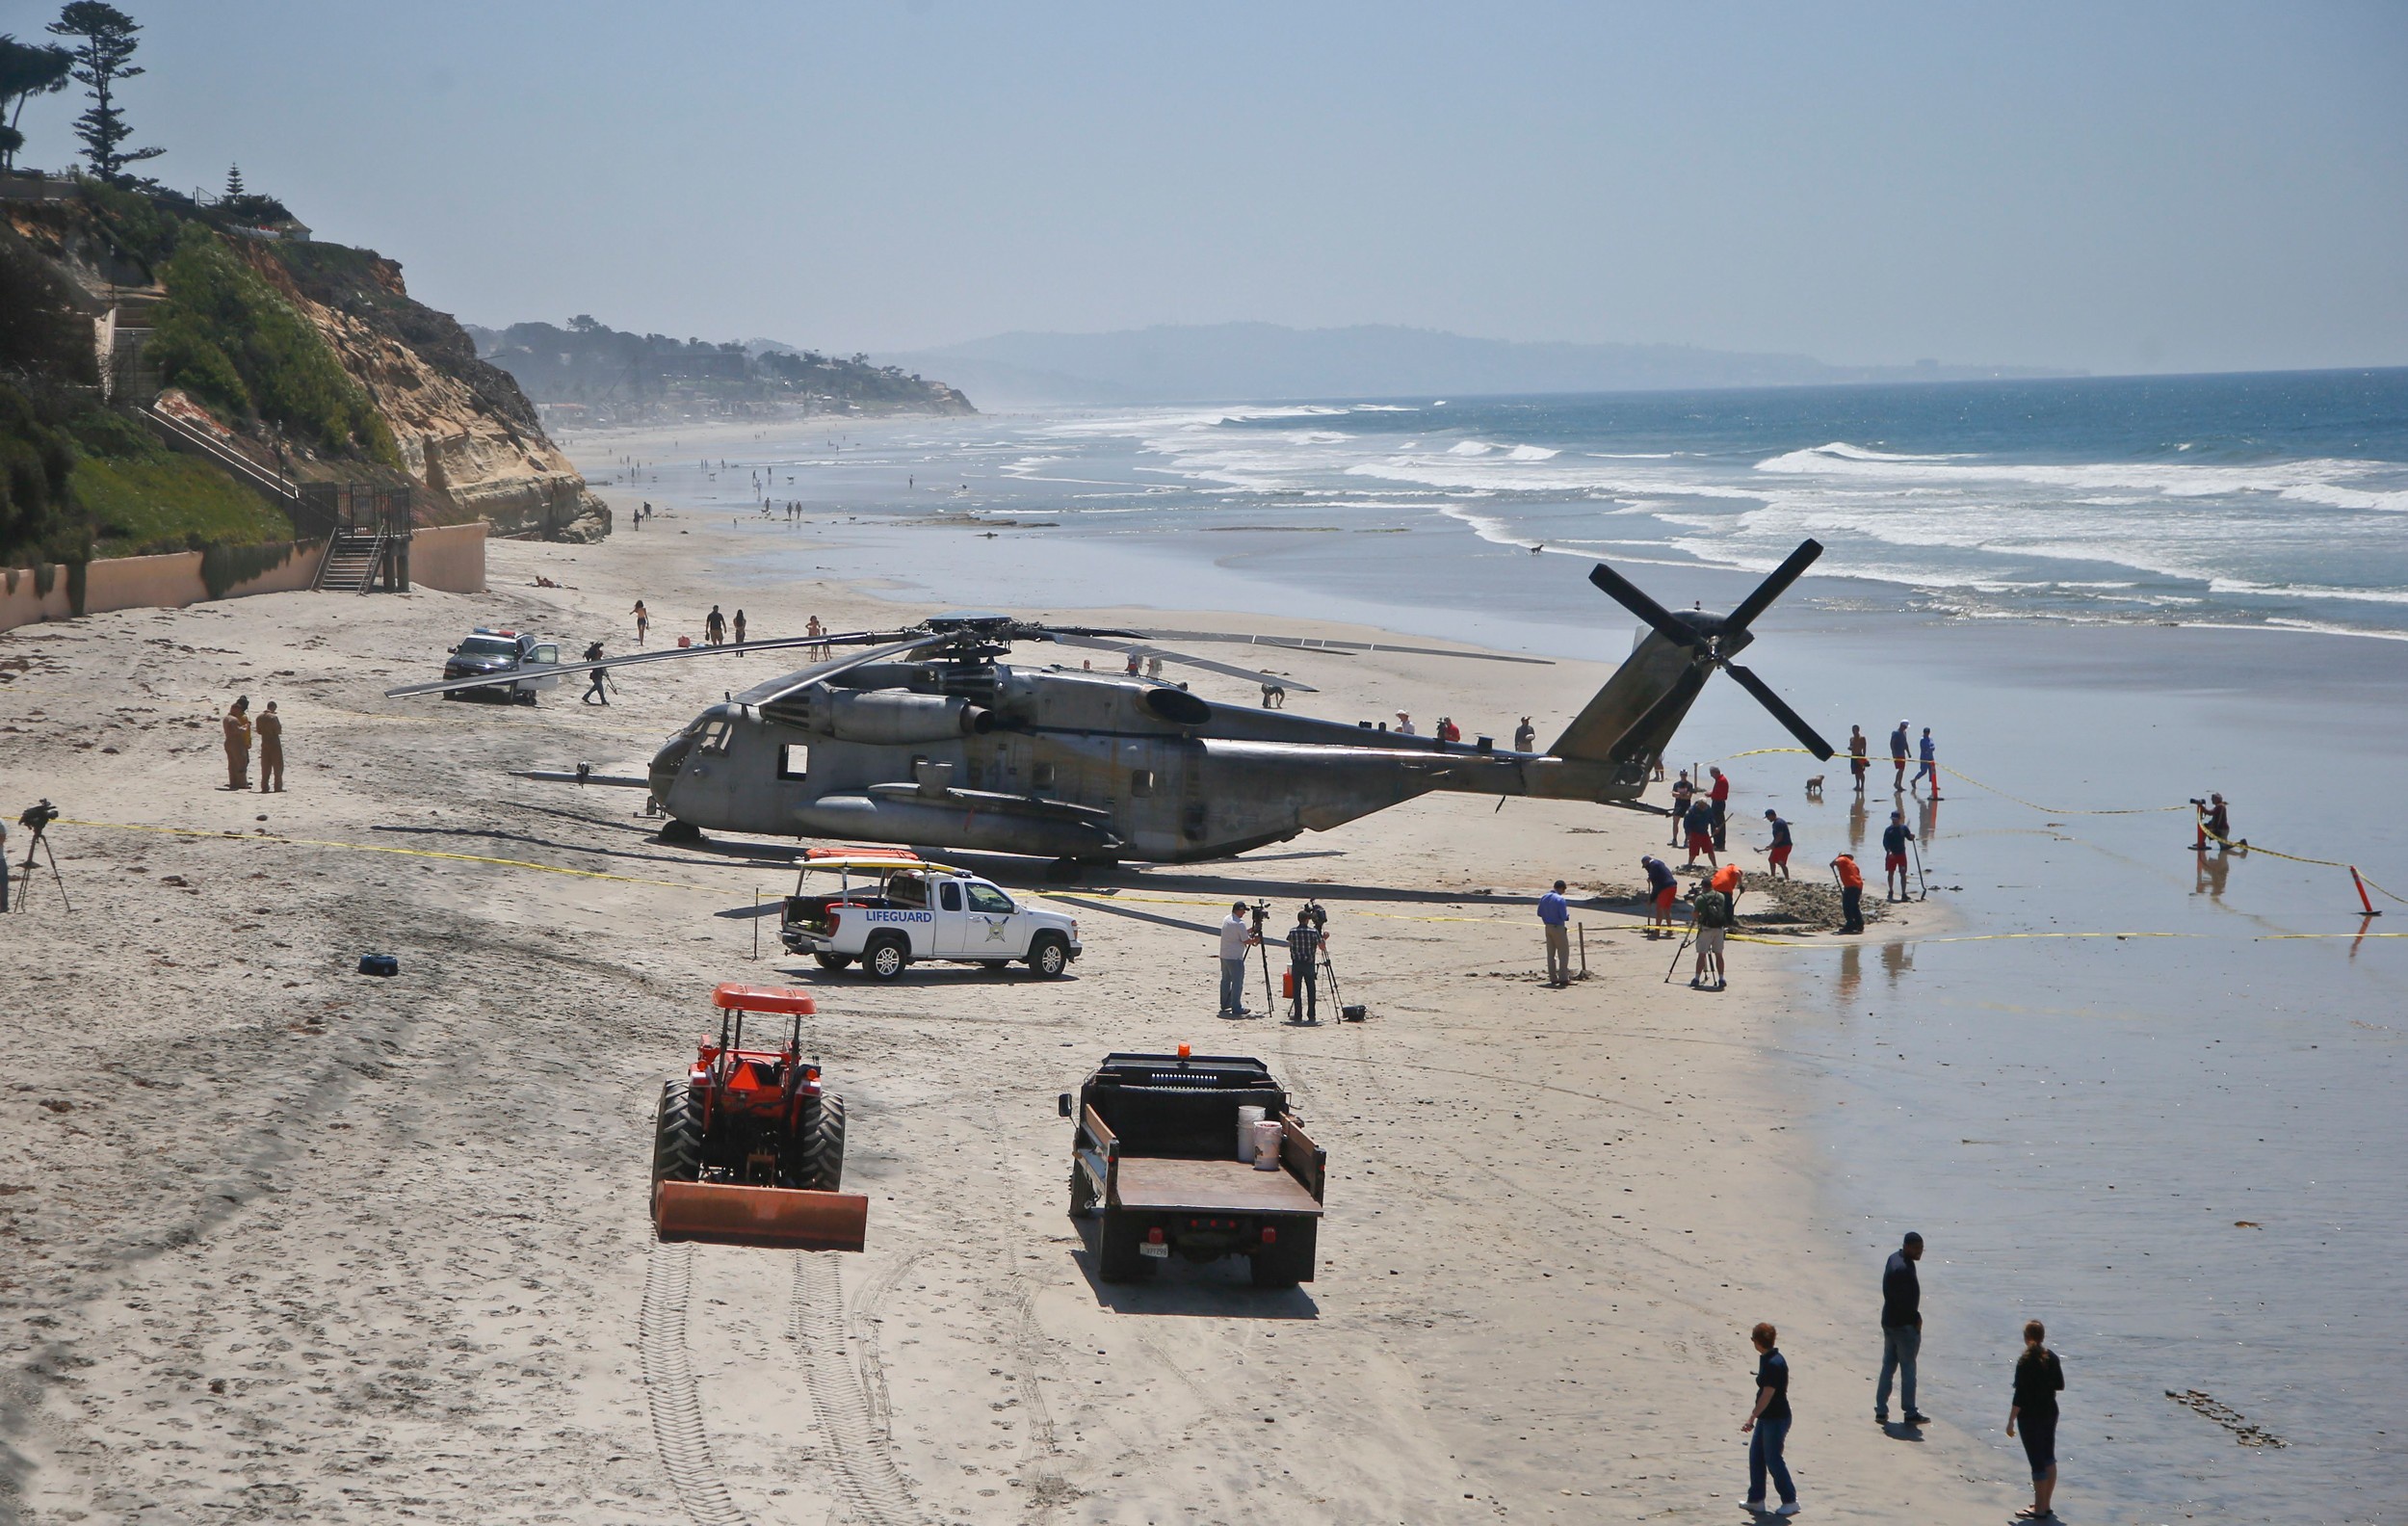 Вертолеты над водохранилищем. Sikorsky Ch-53 Sea Stallion. Вертолет на пляже. Военные вертолеты на пляже. Вертолет над пляжем.